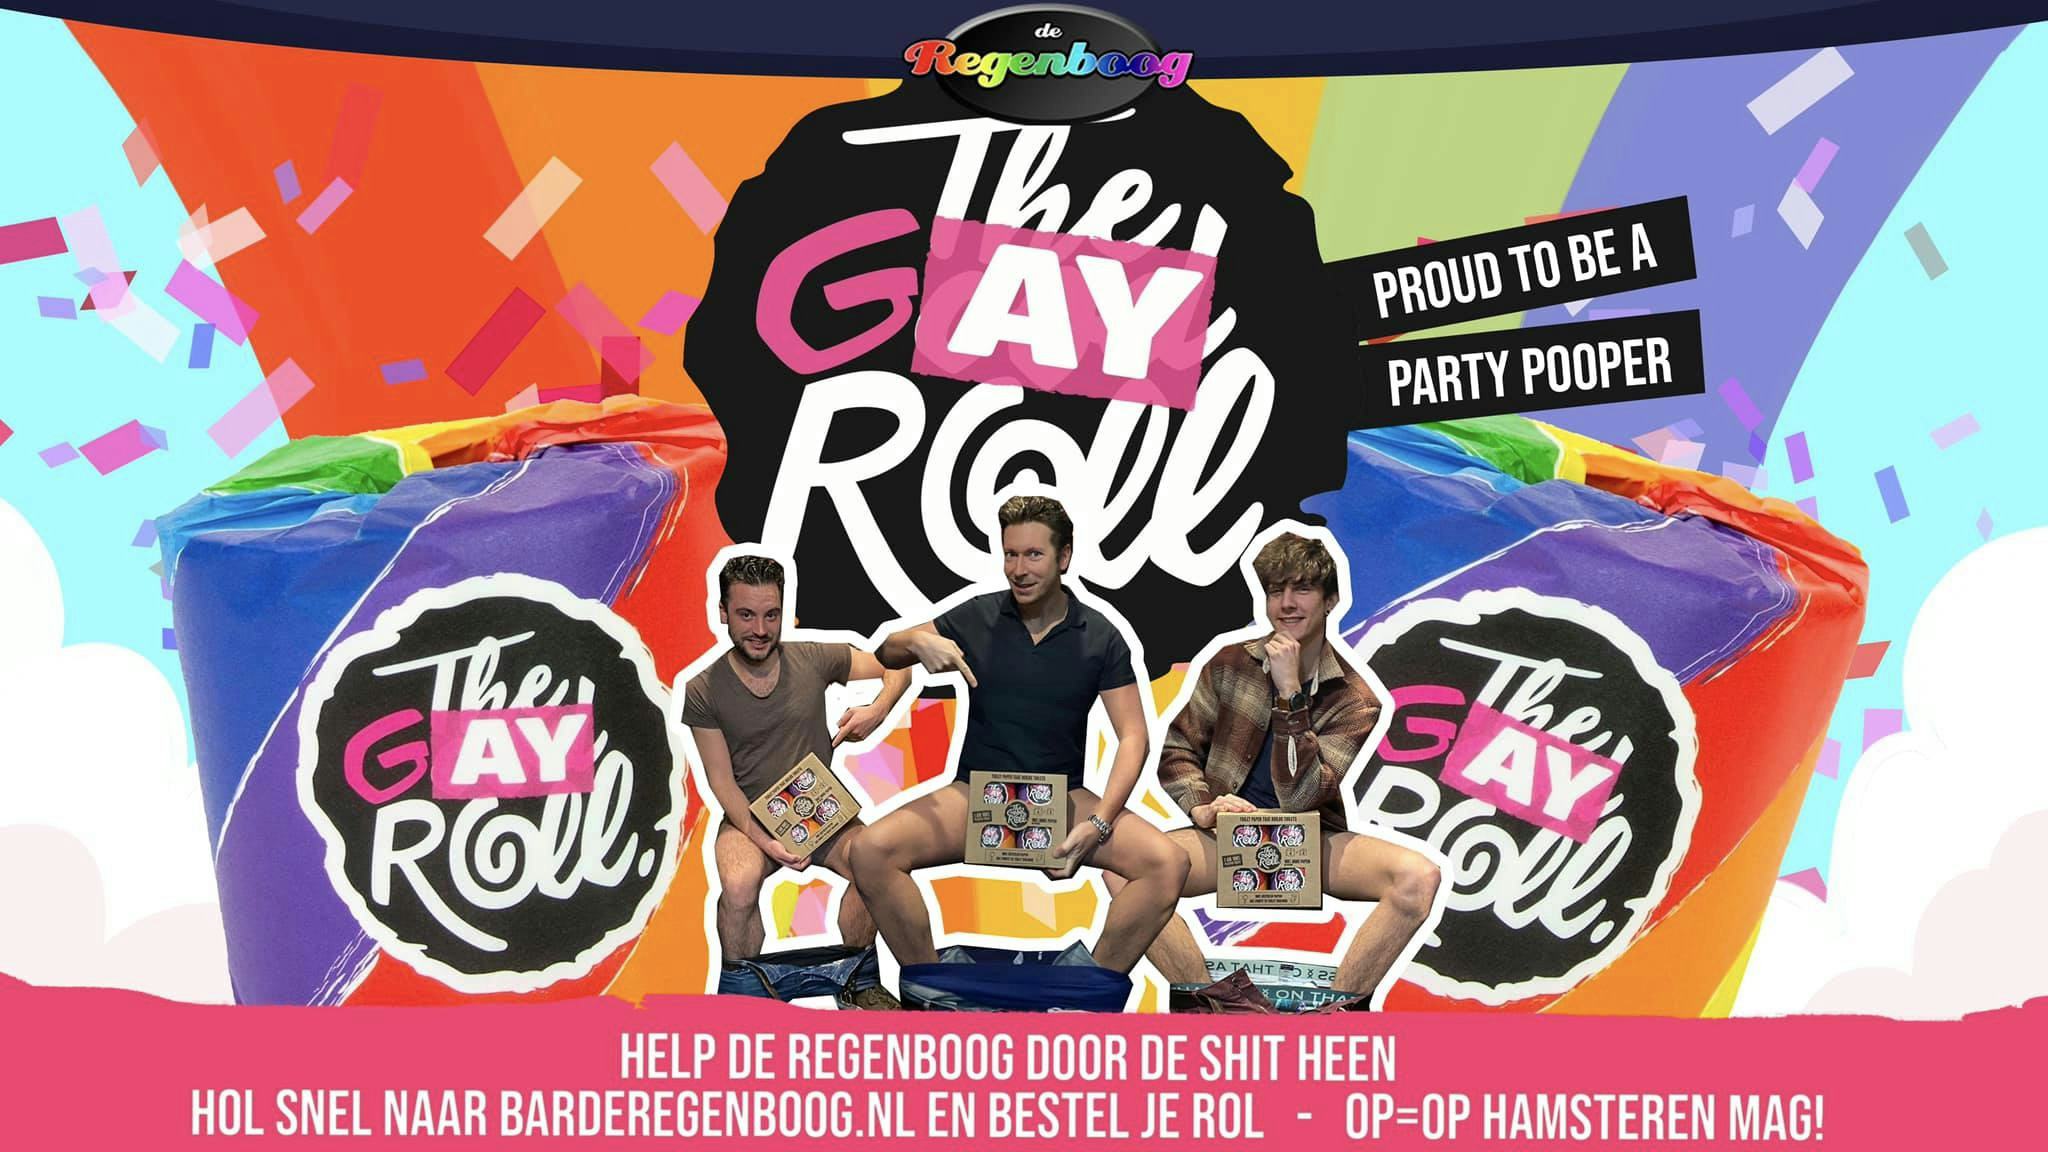 Ludieke gay roll moet Bar de Regenboog in Rotterdam door crisis helpen